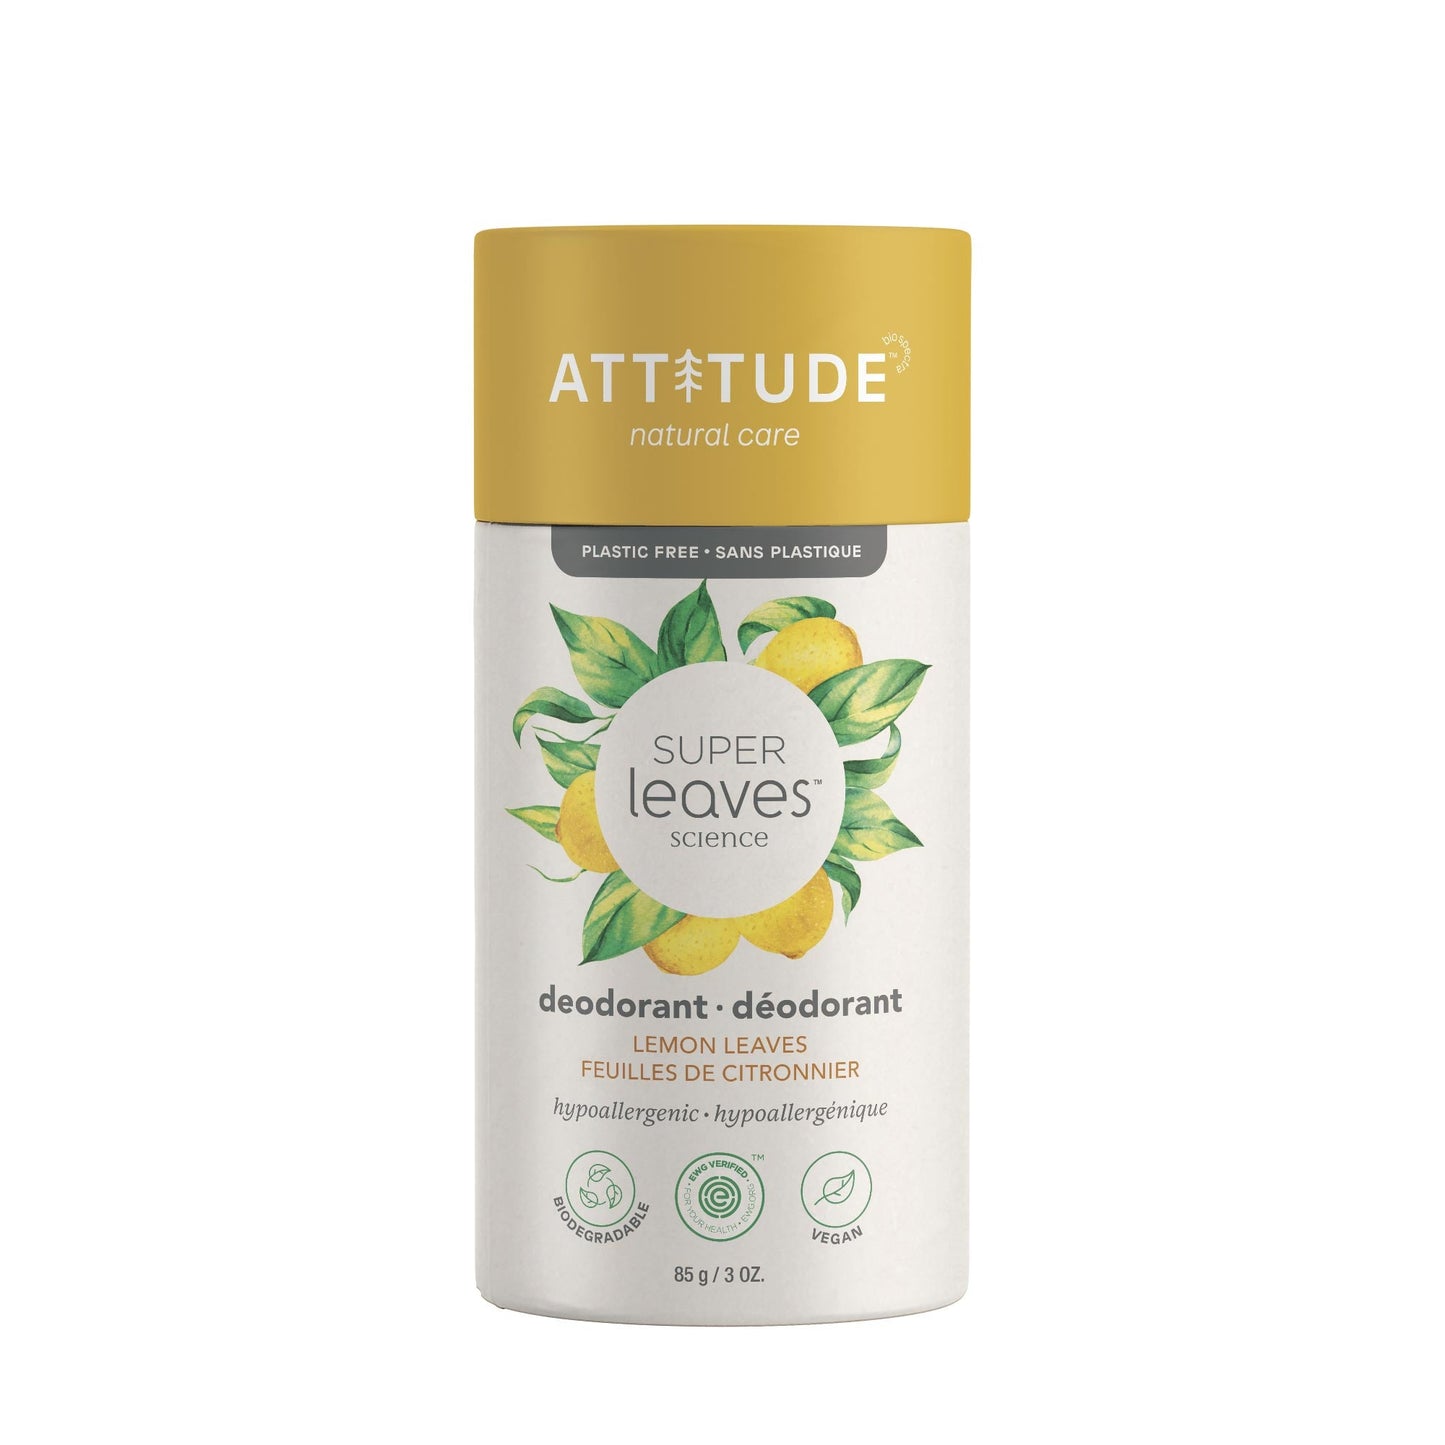 ATTITUDE Super leaves Biodegredable Deodorant Lemon Leaves _en?